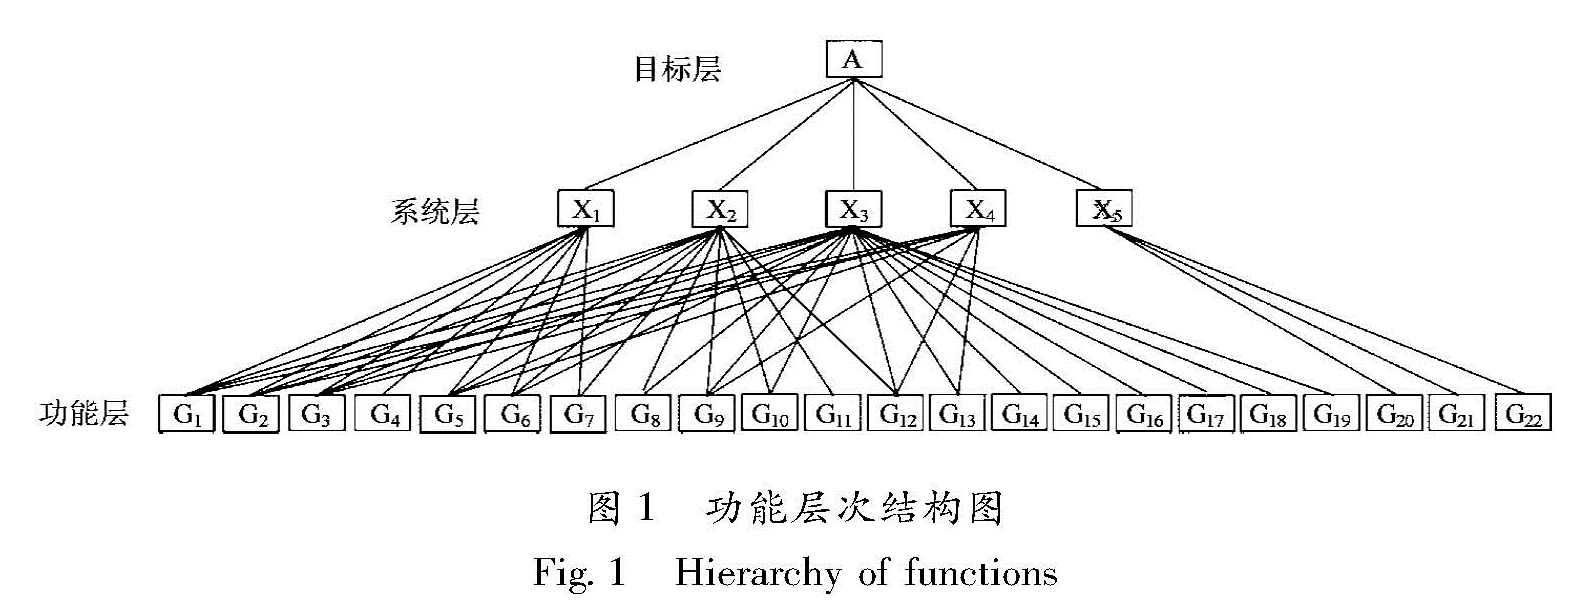 图1 功能层次结构图<br/>Fig.1 Hierarchy of functions